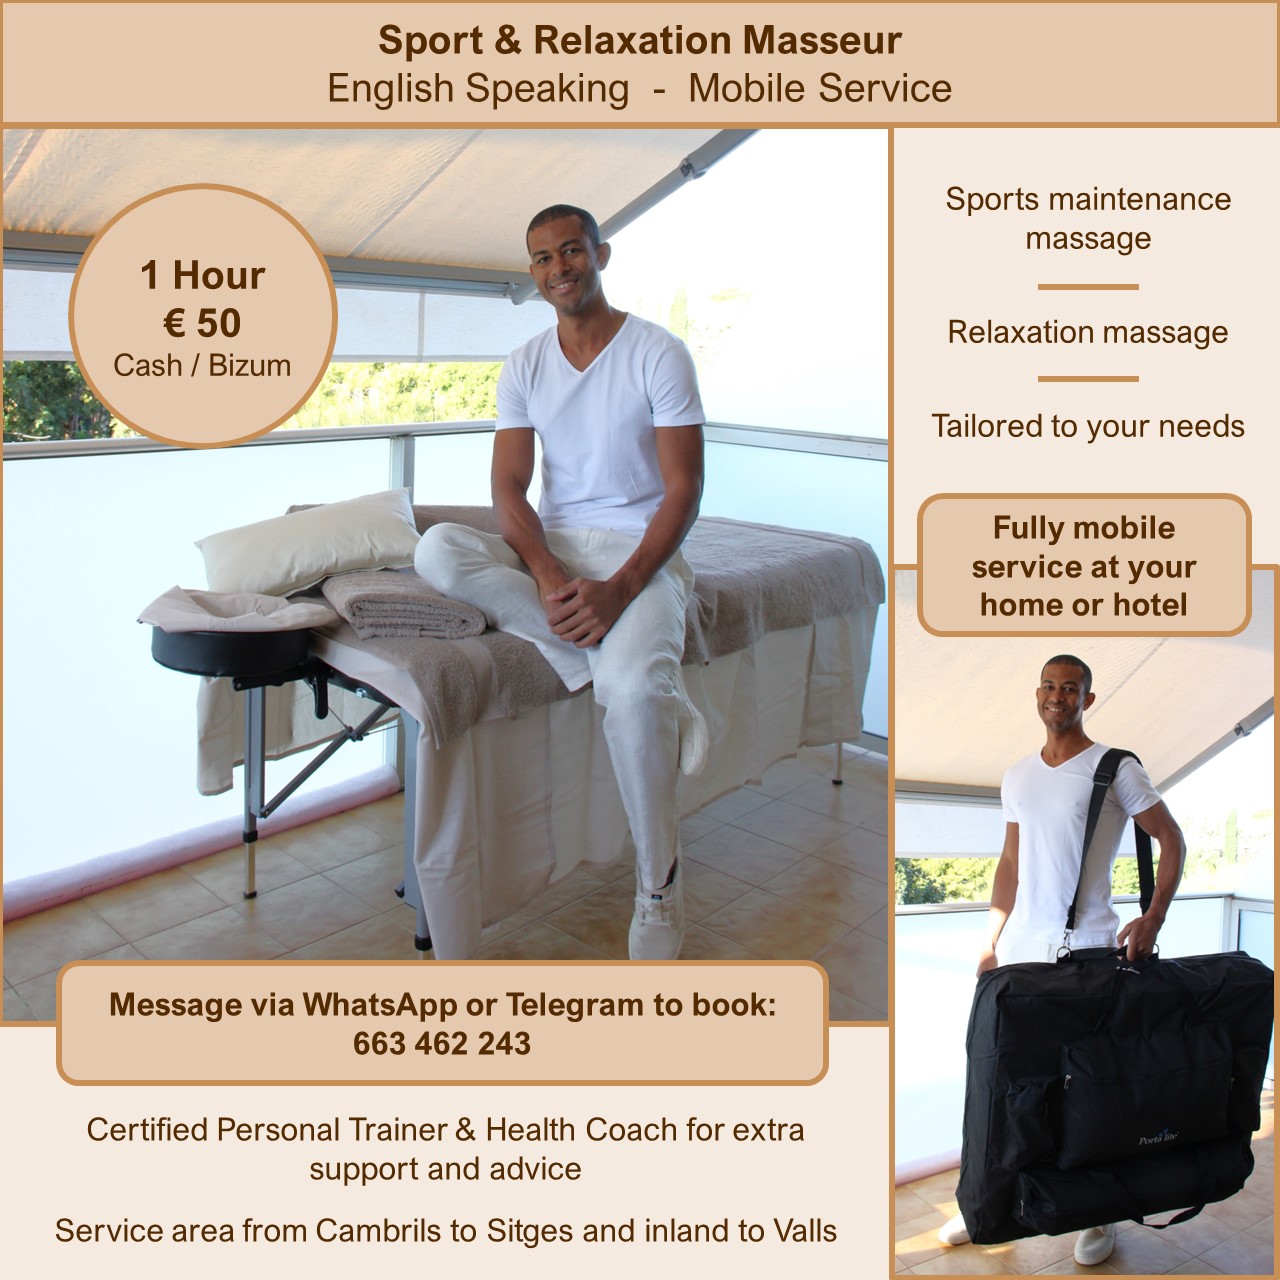 Massaggiatore mobile per sport e relax